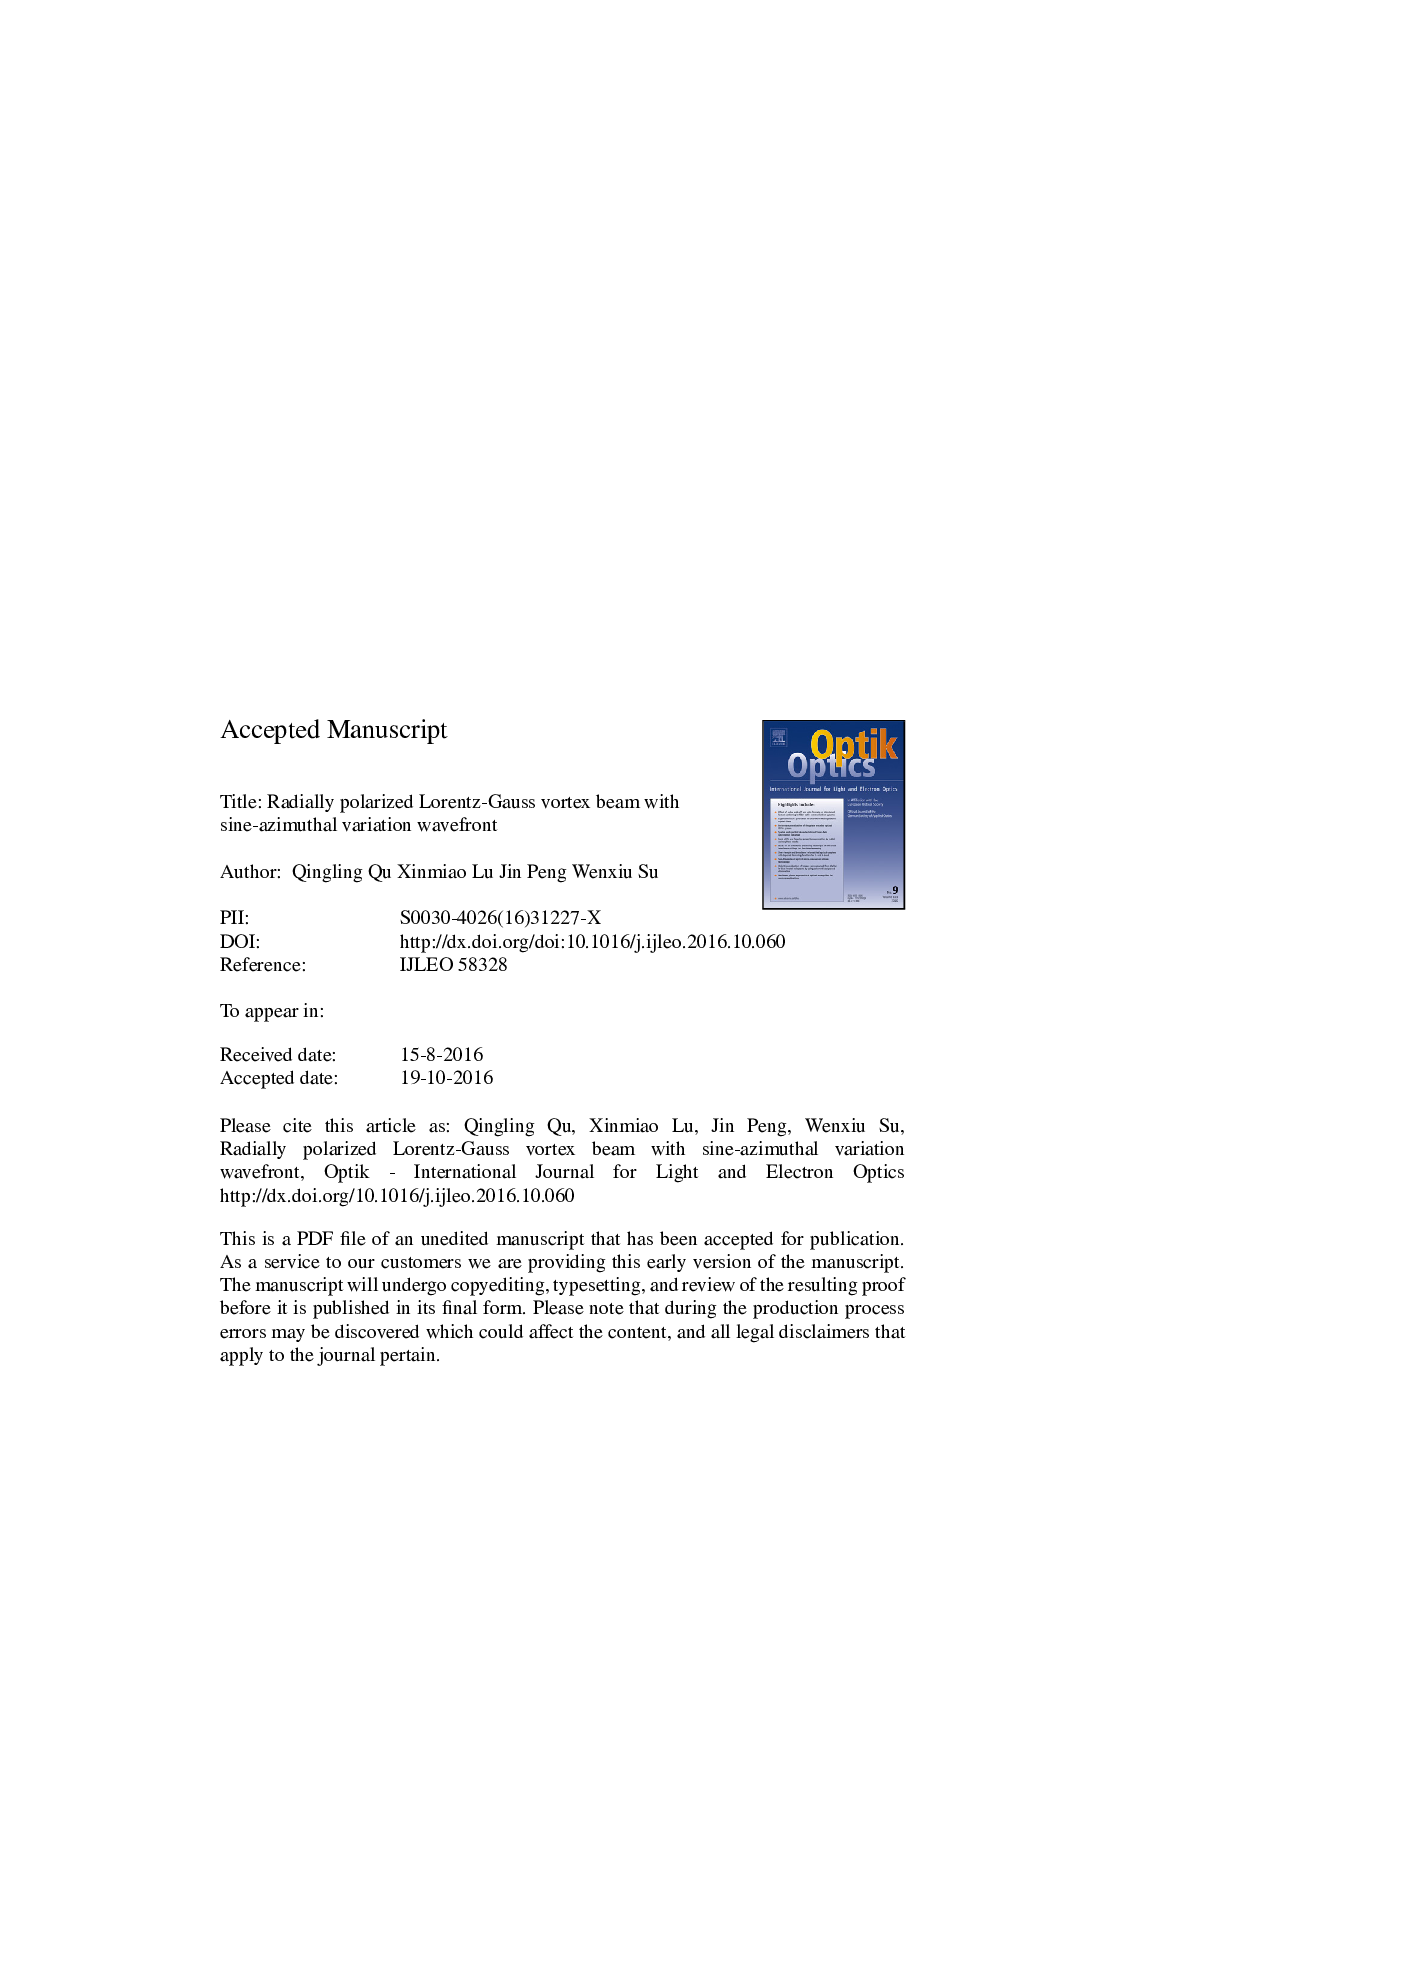 پرتو گردابی لورنتز-گاوس به صورت شعاعی قطبی با موج فیزیکی سینوآزیموتال 